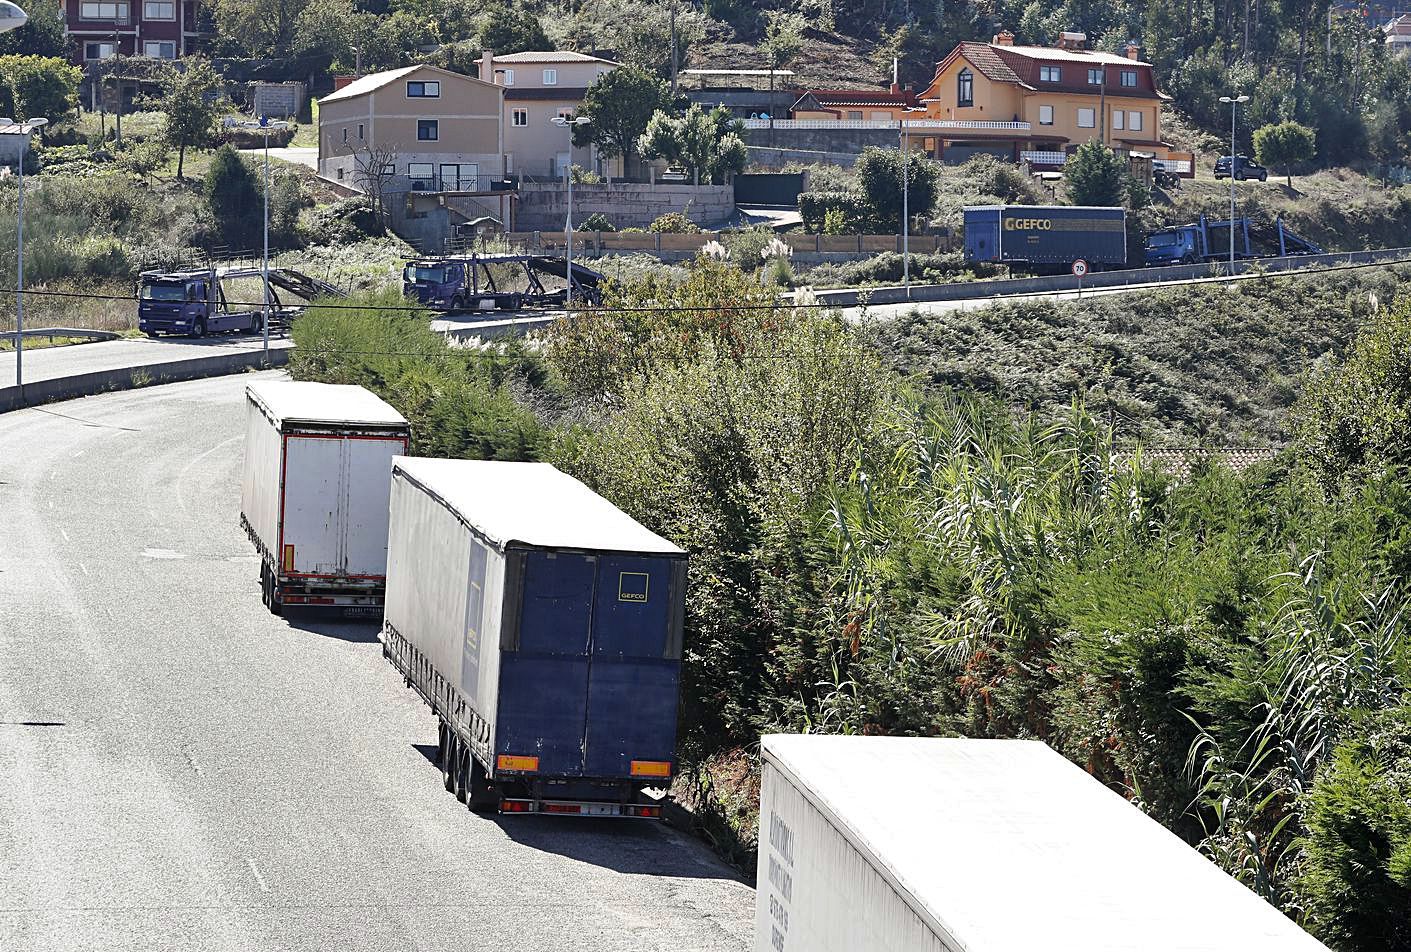 Camiones portavehículos y remolques de Gefco, aparcados en los alrededores de Balaídos.